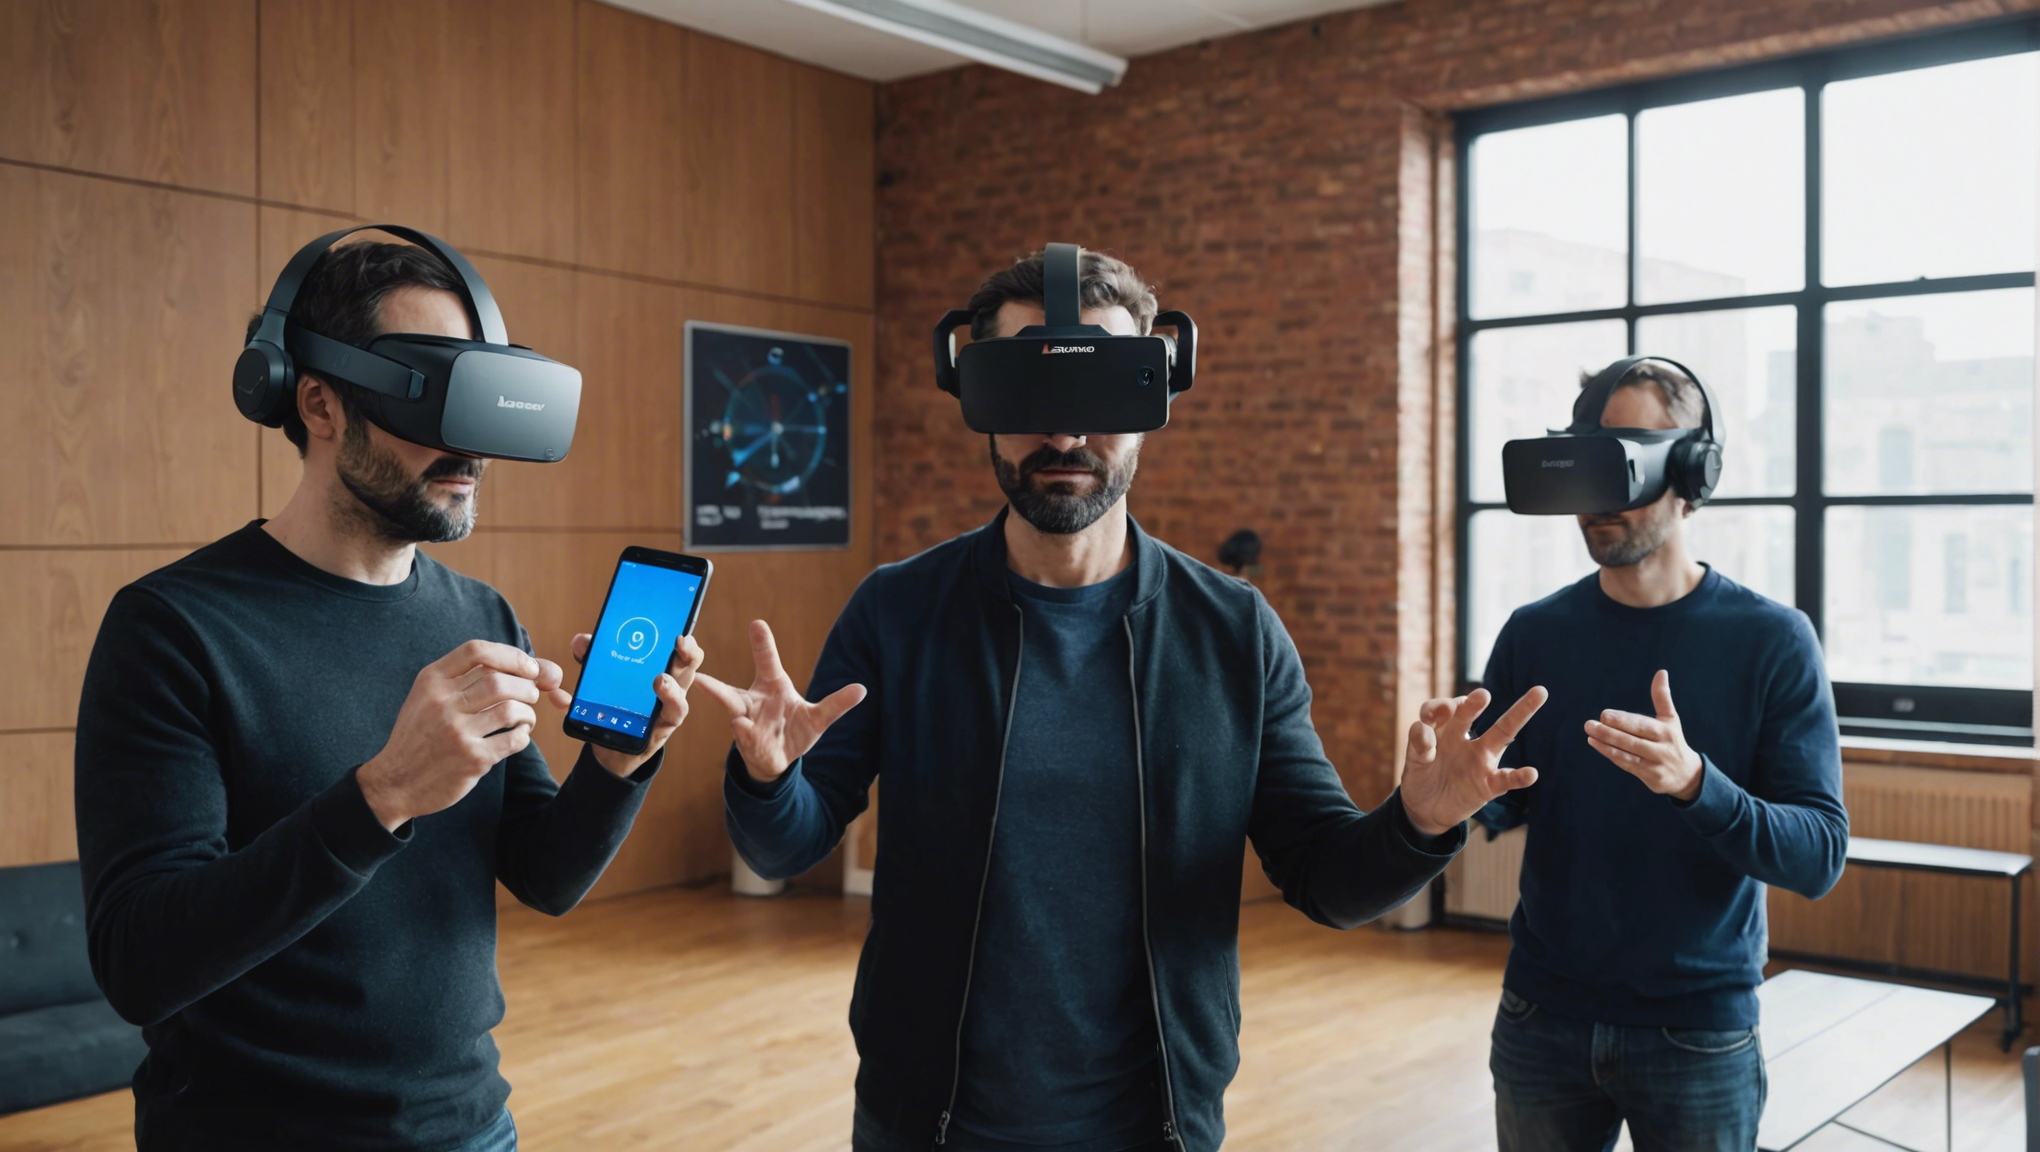 découvrez le lenovo explorer, le casque de réalité virtuelle qui révolutionne l'expérience virtuelle ! plongez dans des mondes immersifs et explorez de nouveaux horizons avec ce bijou de technologie.